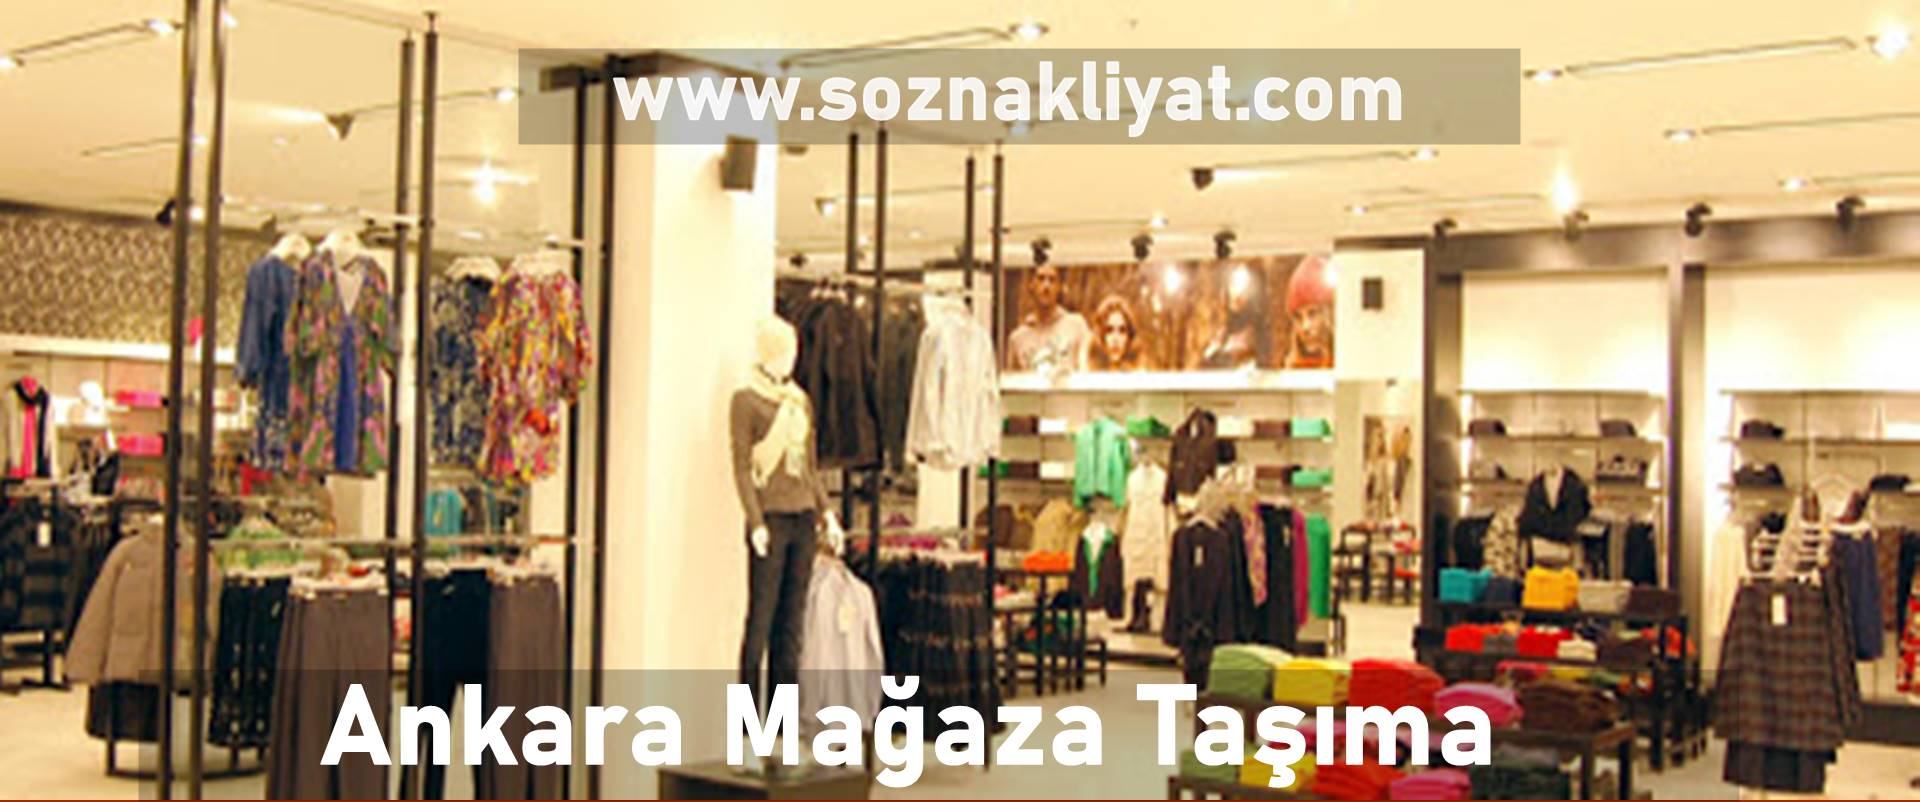 Ankara Mağaza Taşıma Firması